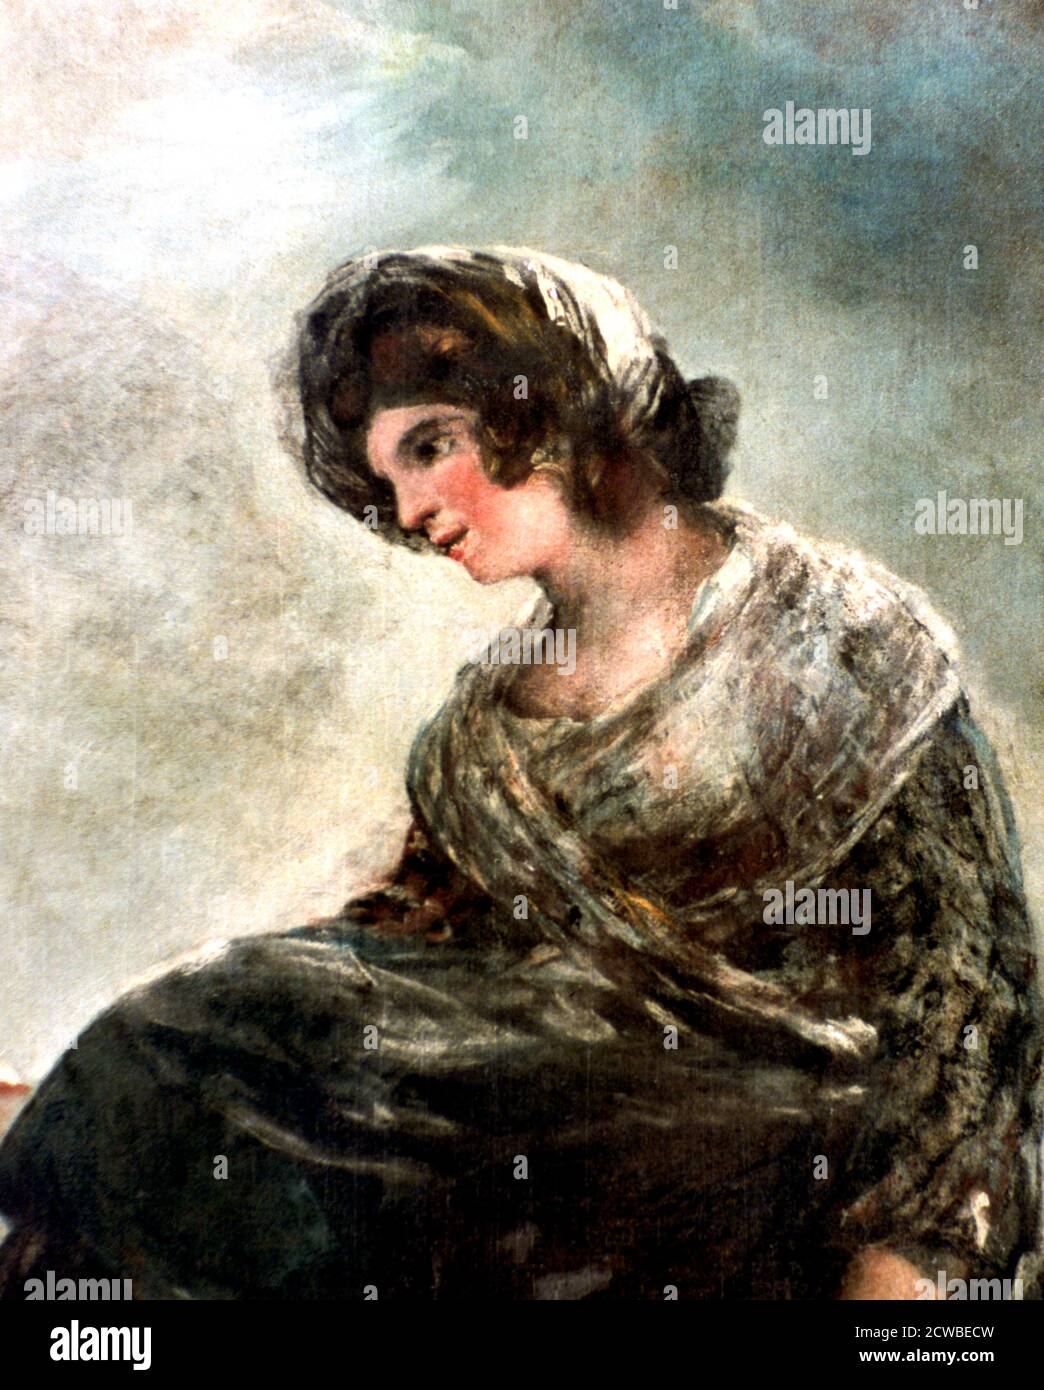 La Milkmaid de Bordeaux', c1824. Artiste: Francisco Goya. Francisco Goya(1746-1828) était un artiste espagnol dont les peintures, dessins et gravures reflétaient des bouleversements historiques contemporains et influençaient d'importants peintres des XIXe et XXe siècles. Banque D'Images